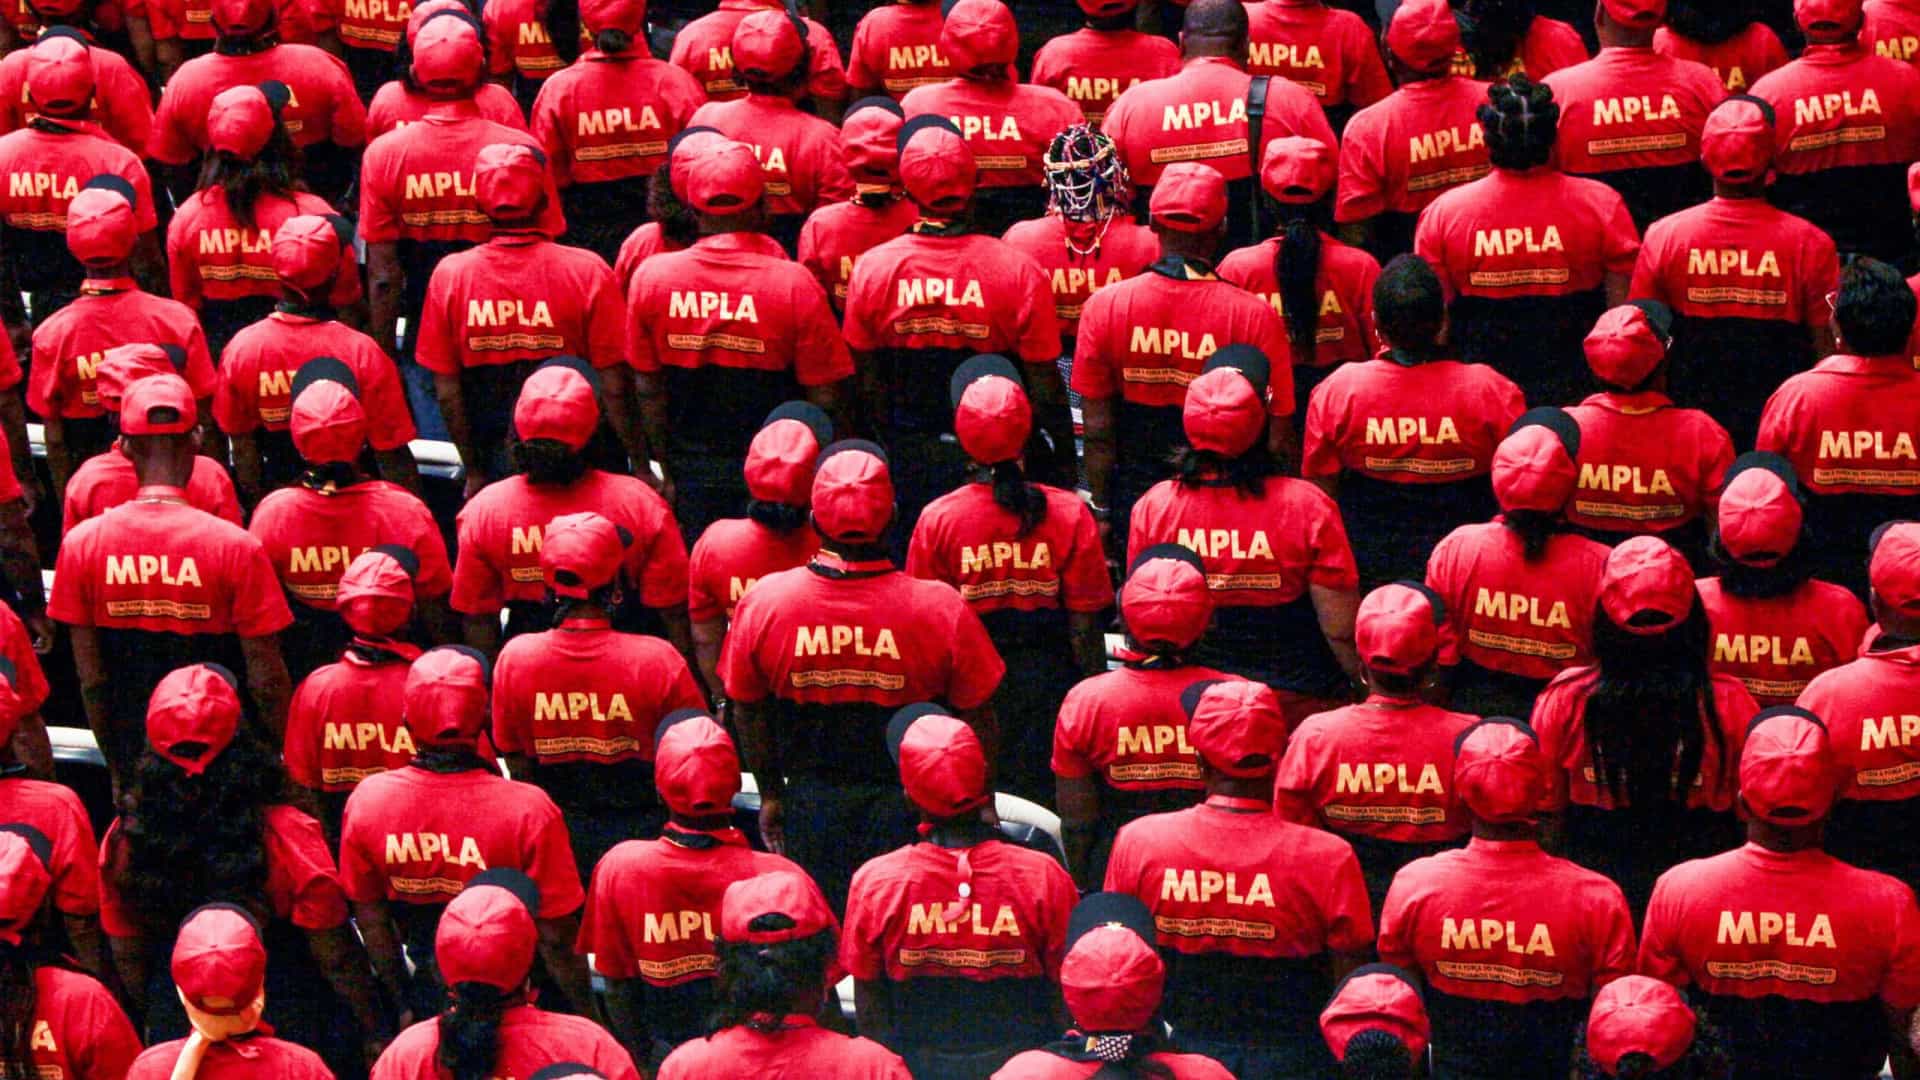 Vitória nas eleições angolanas obriga MPLA a melhorar a vida das pessoas